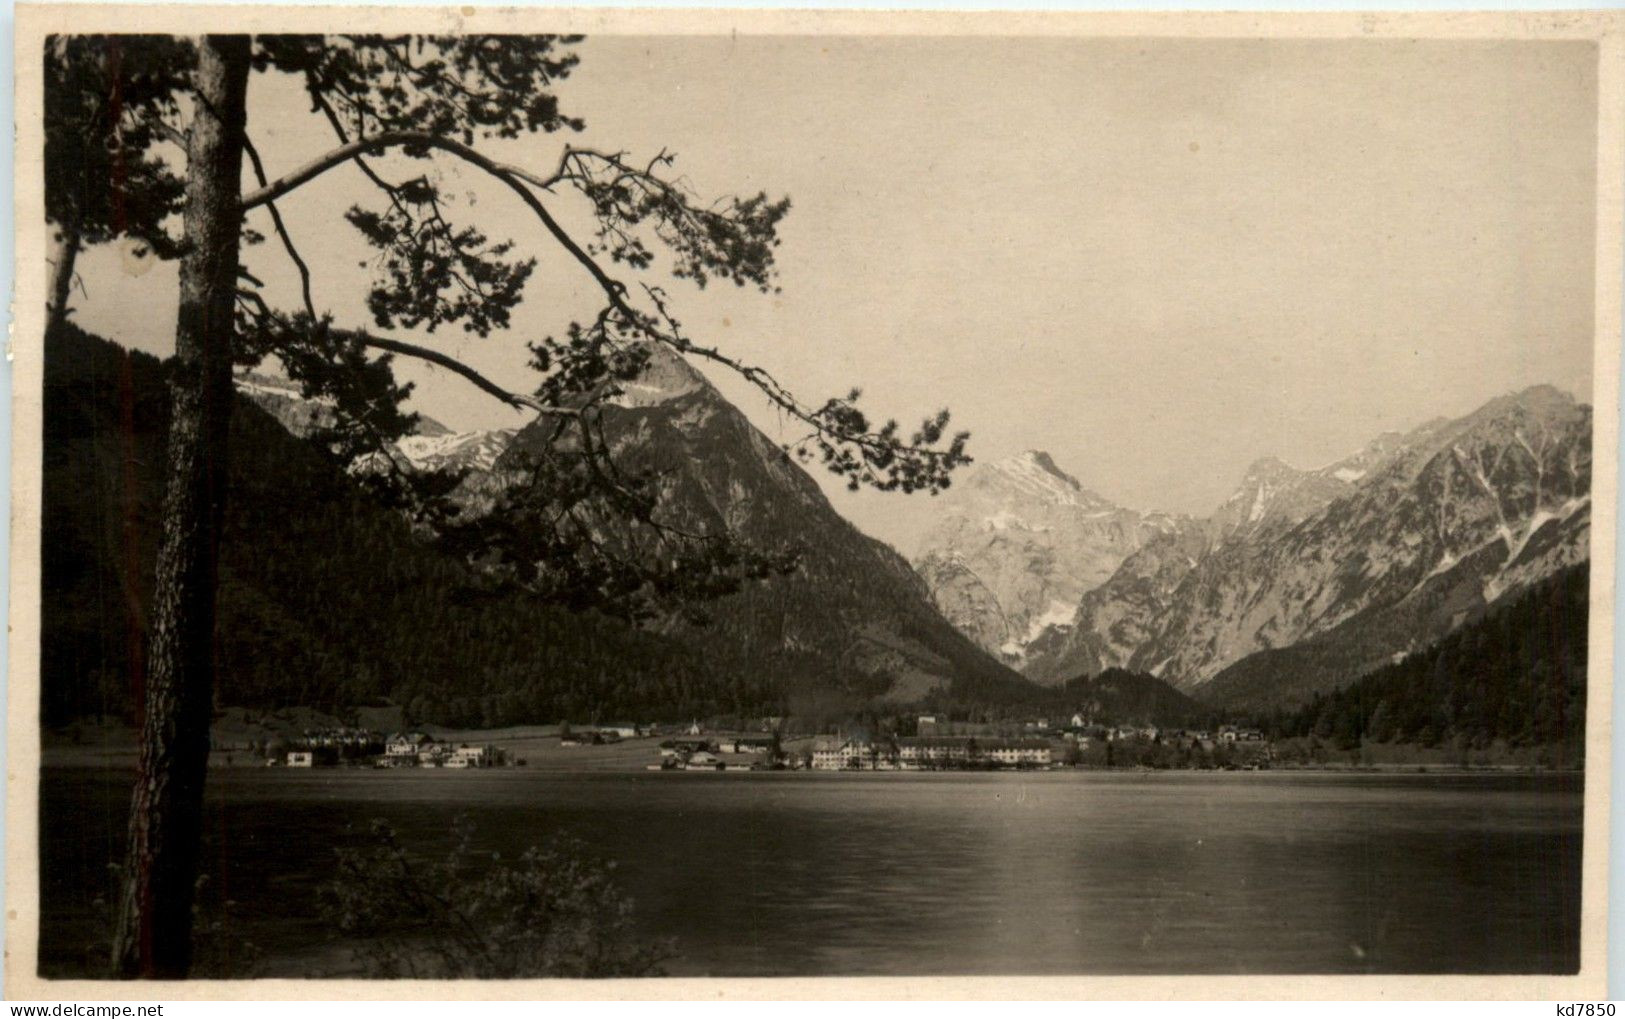 Achensee/Tirol Und Umgebung - Achensee, Pertisau, - Achenseeorte